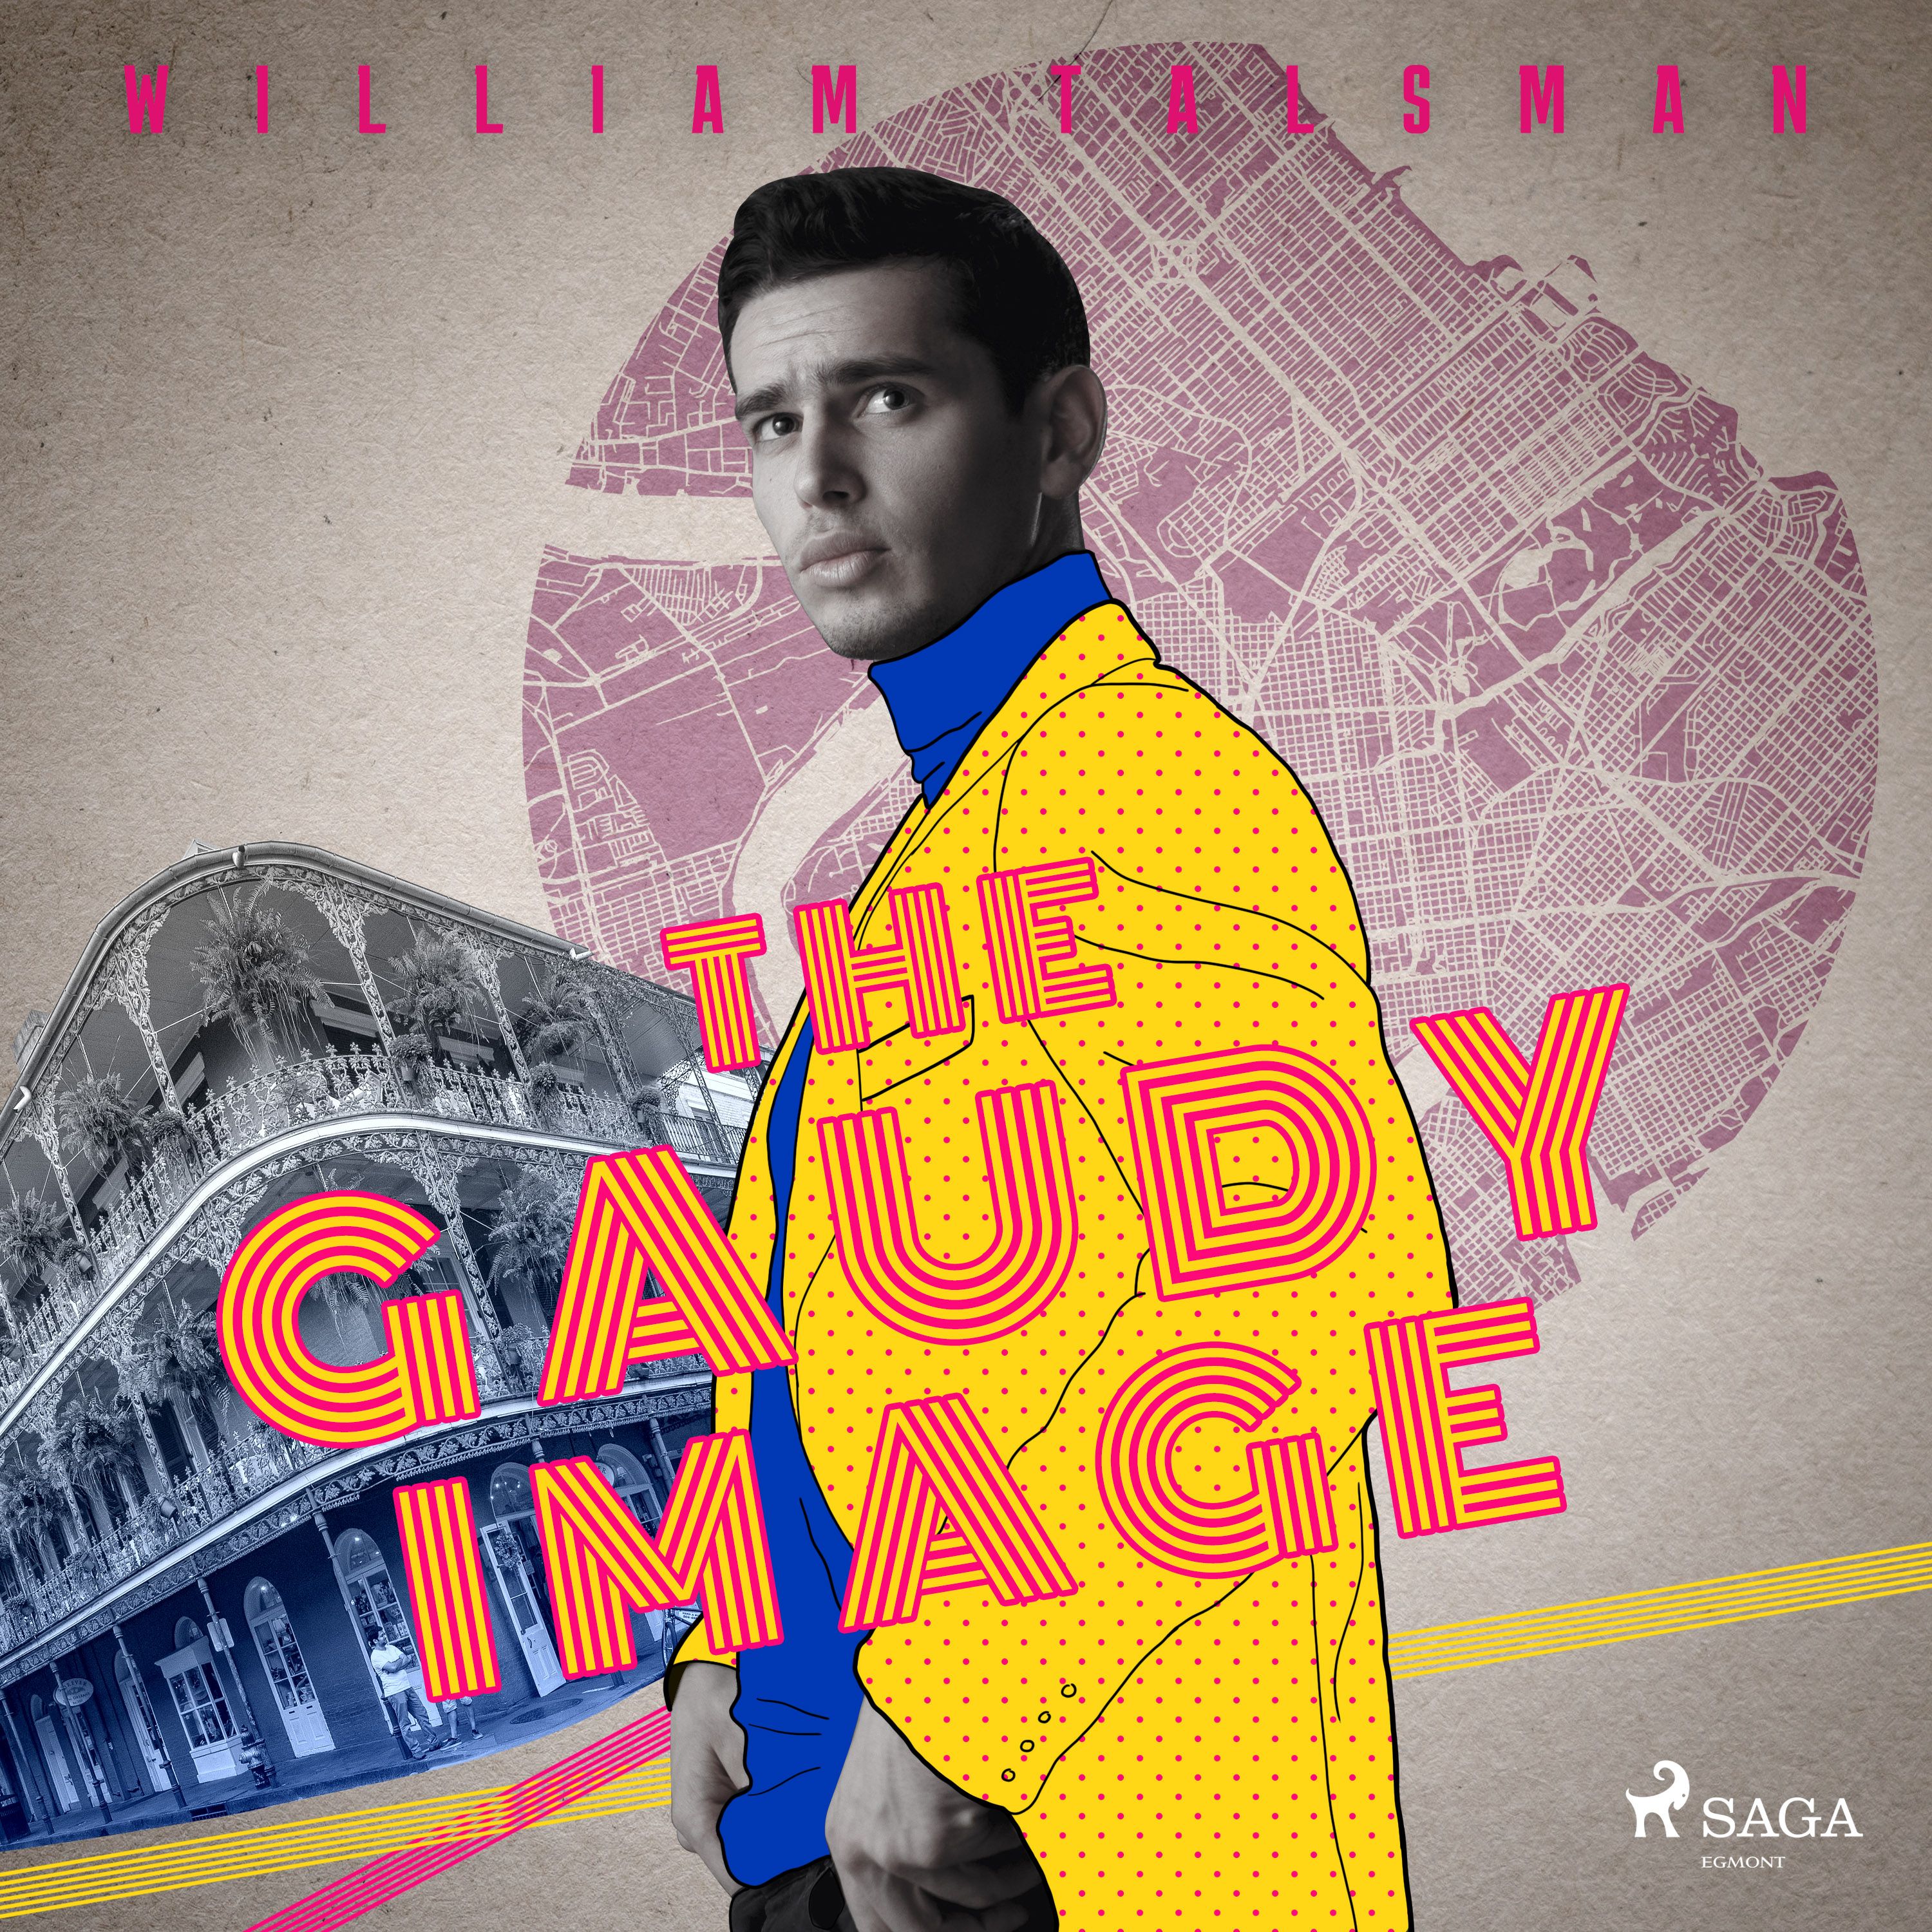 The Gaudy Image, lydbog af William Talsman